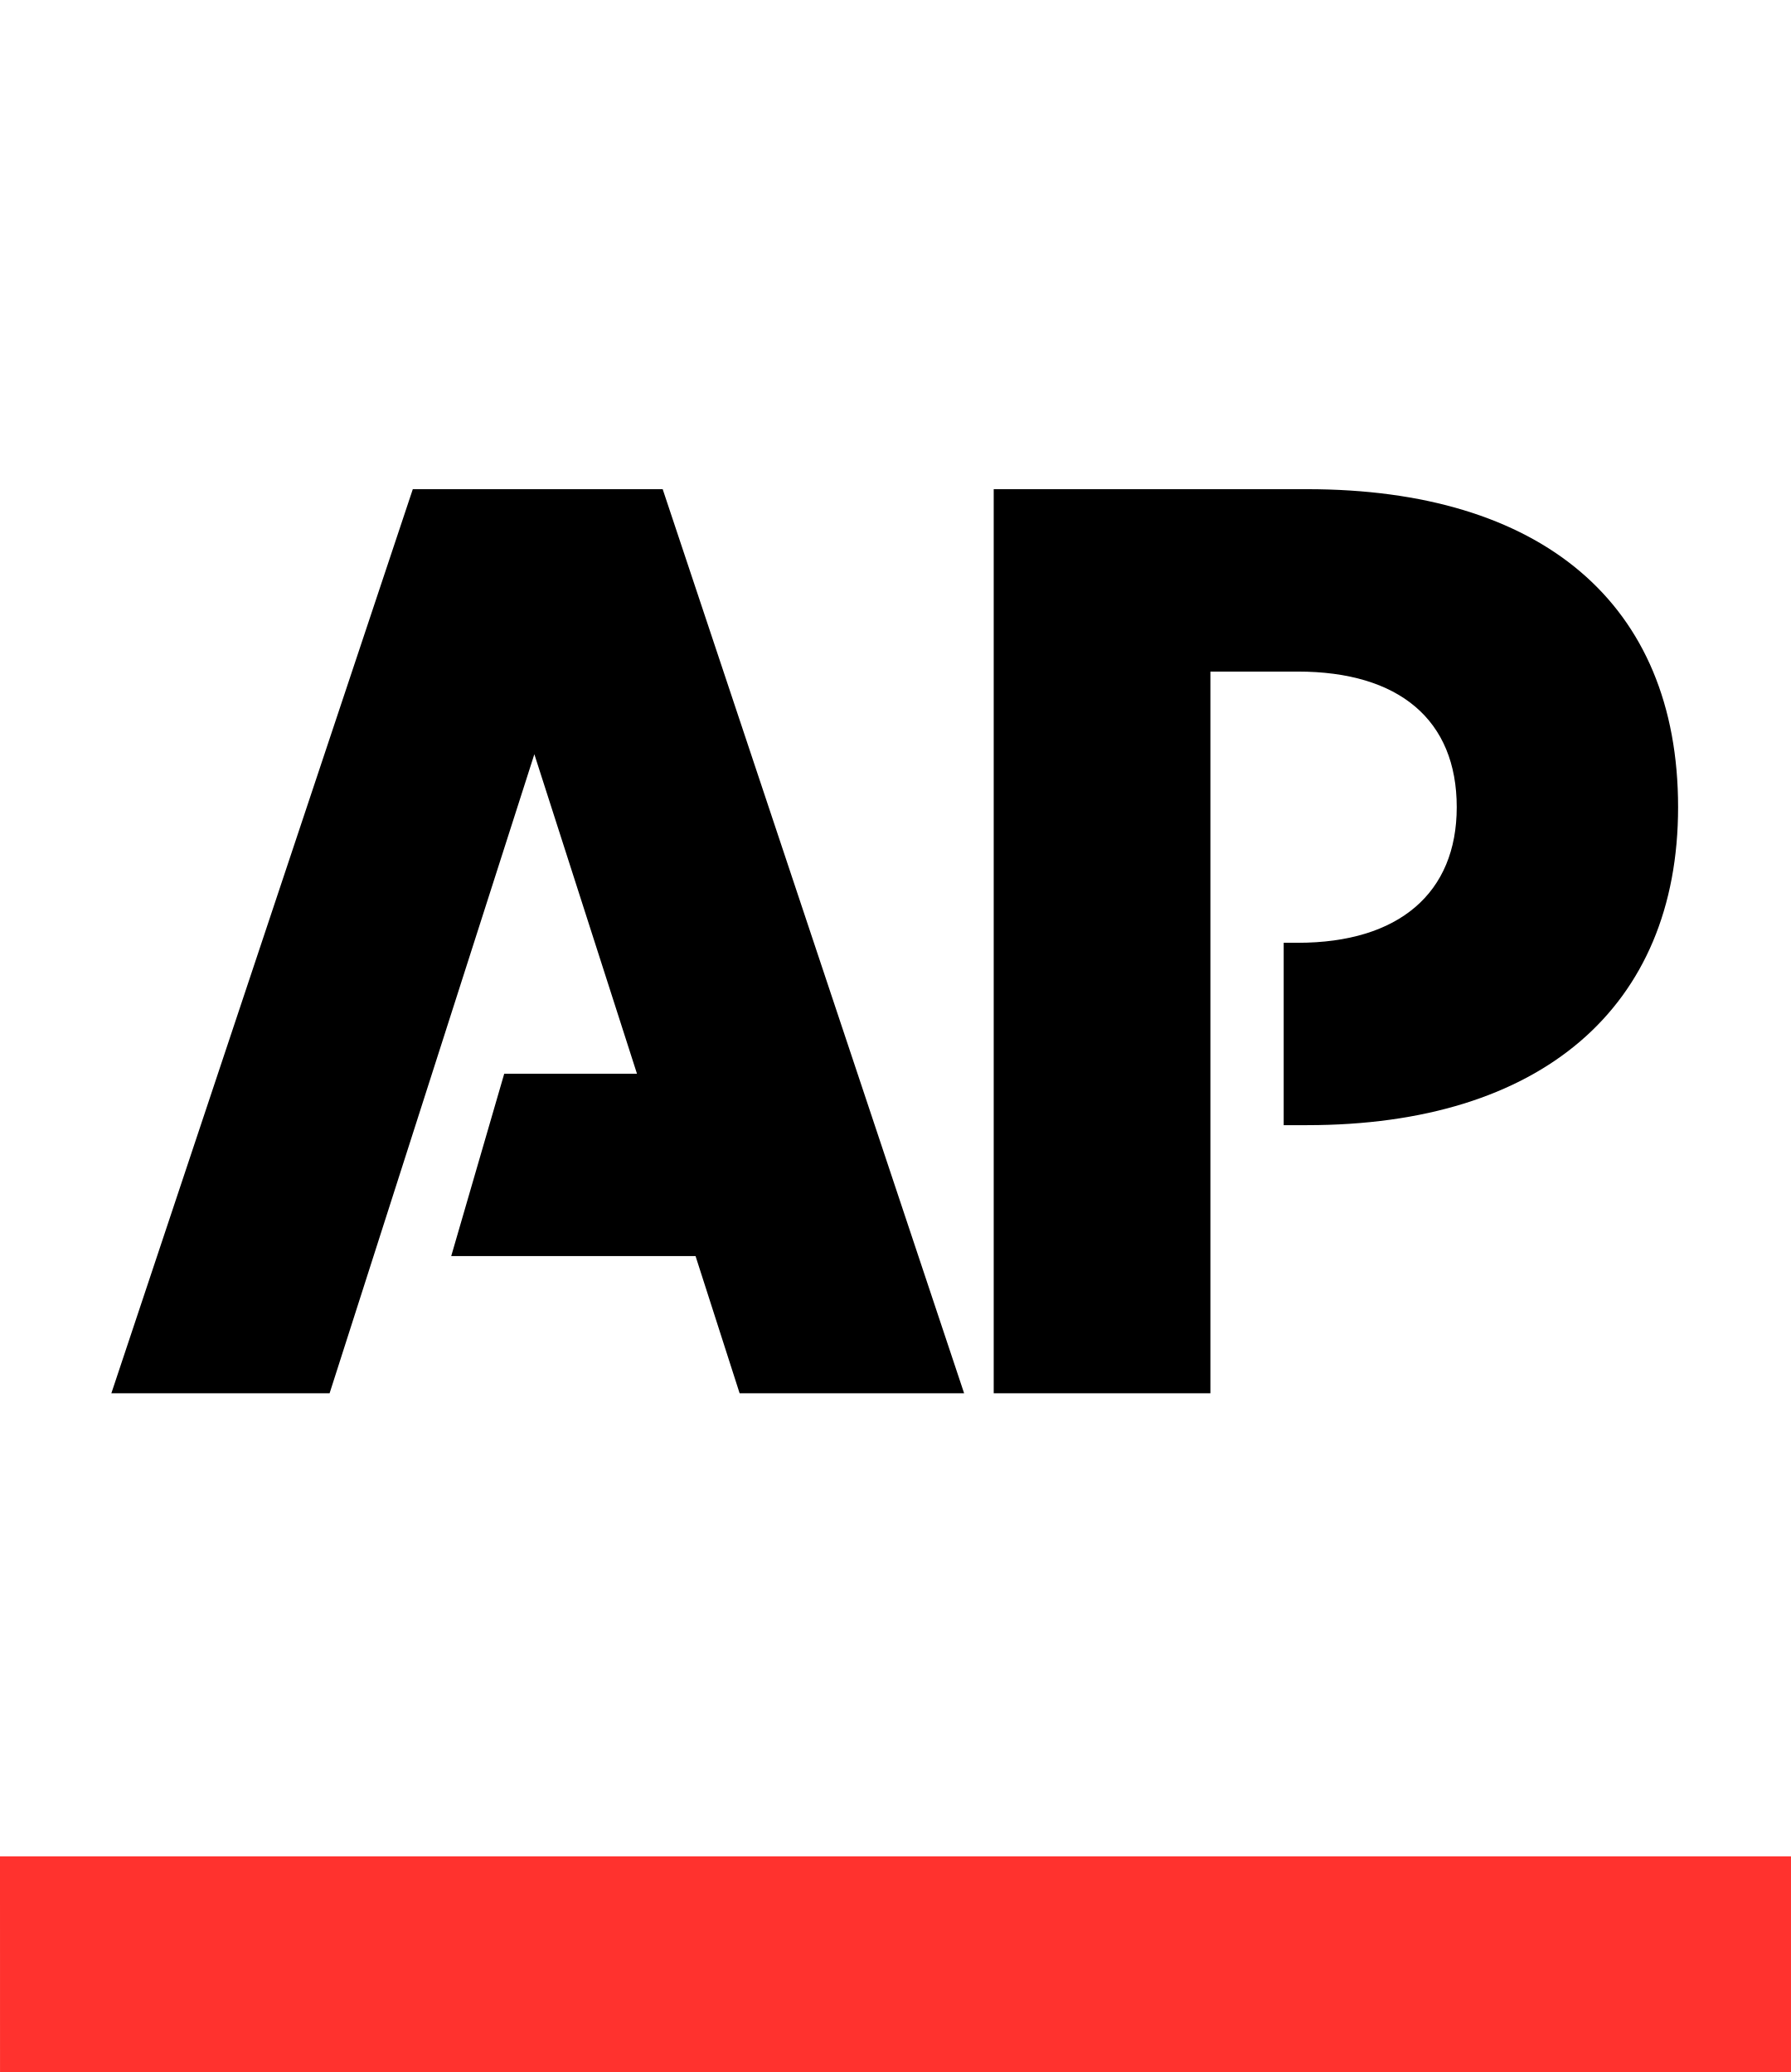 associated press logo 1 - Associated Press Logo